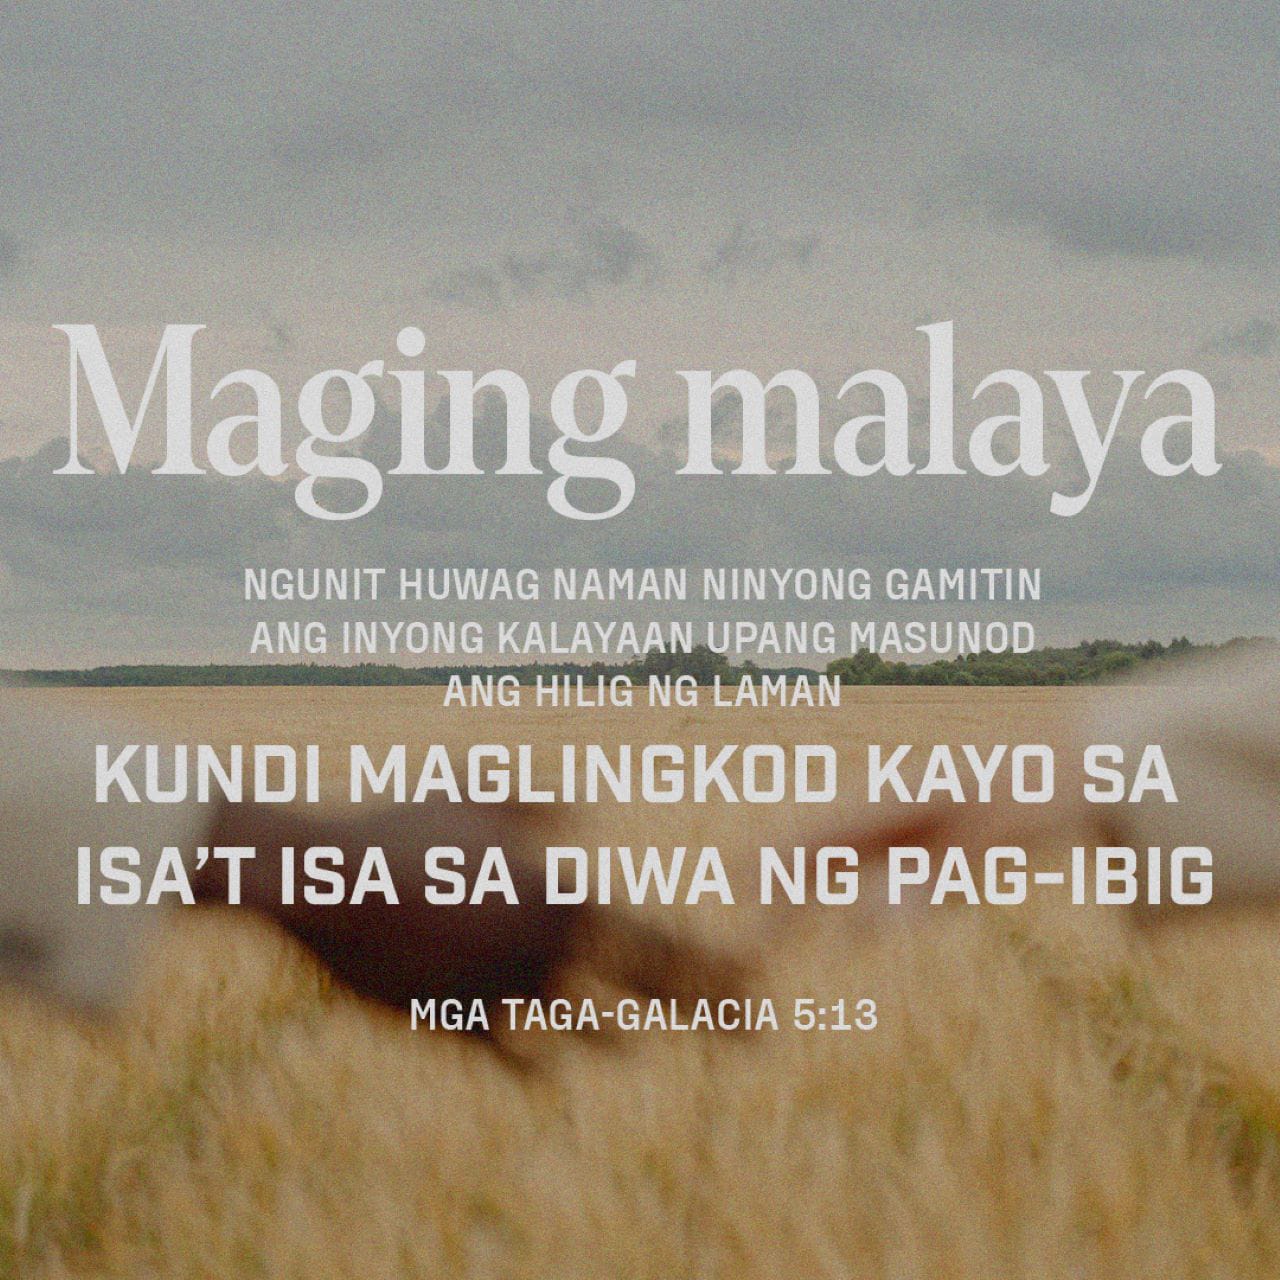 Mga Taga-Galacia 5:13-25 Mga kapatid, tinawag kayo upang maging malaya